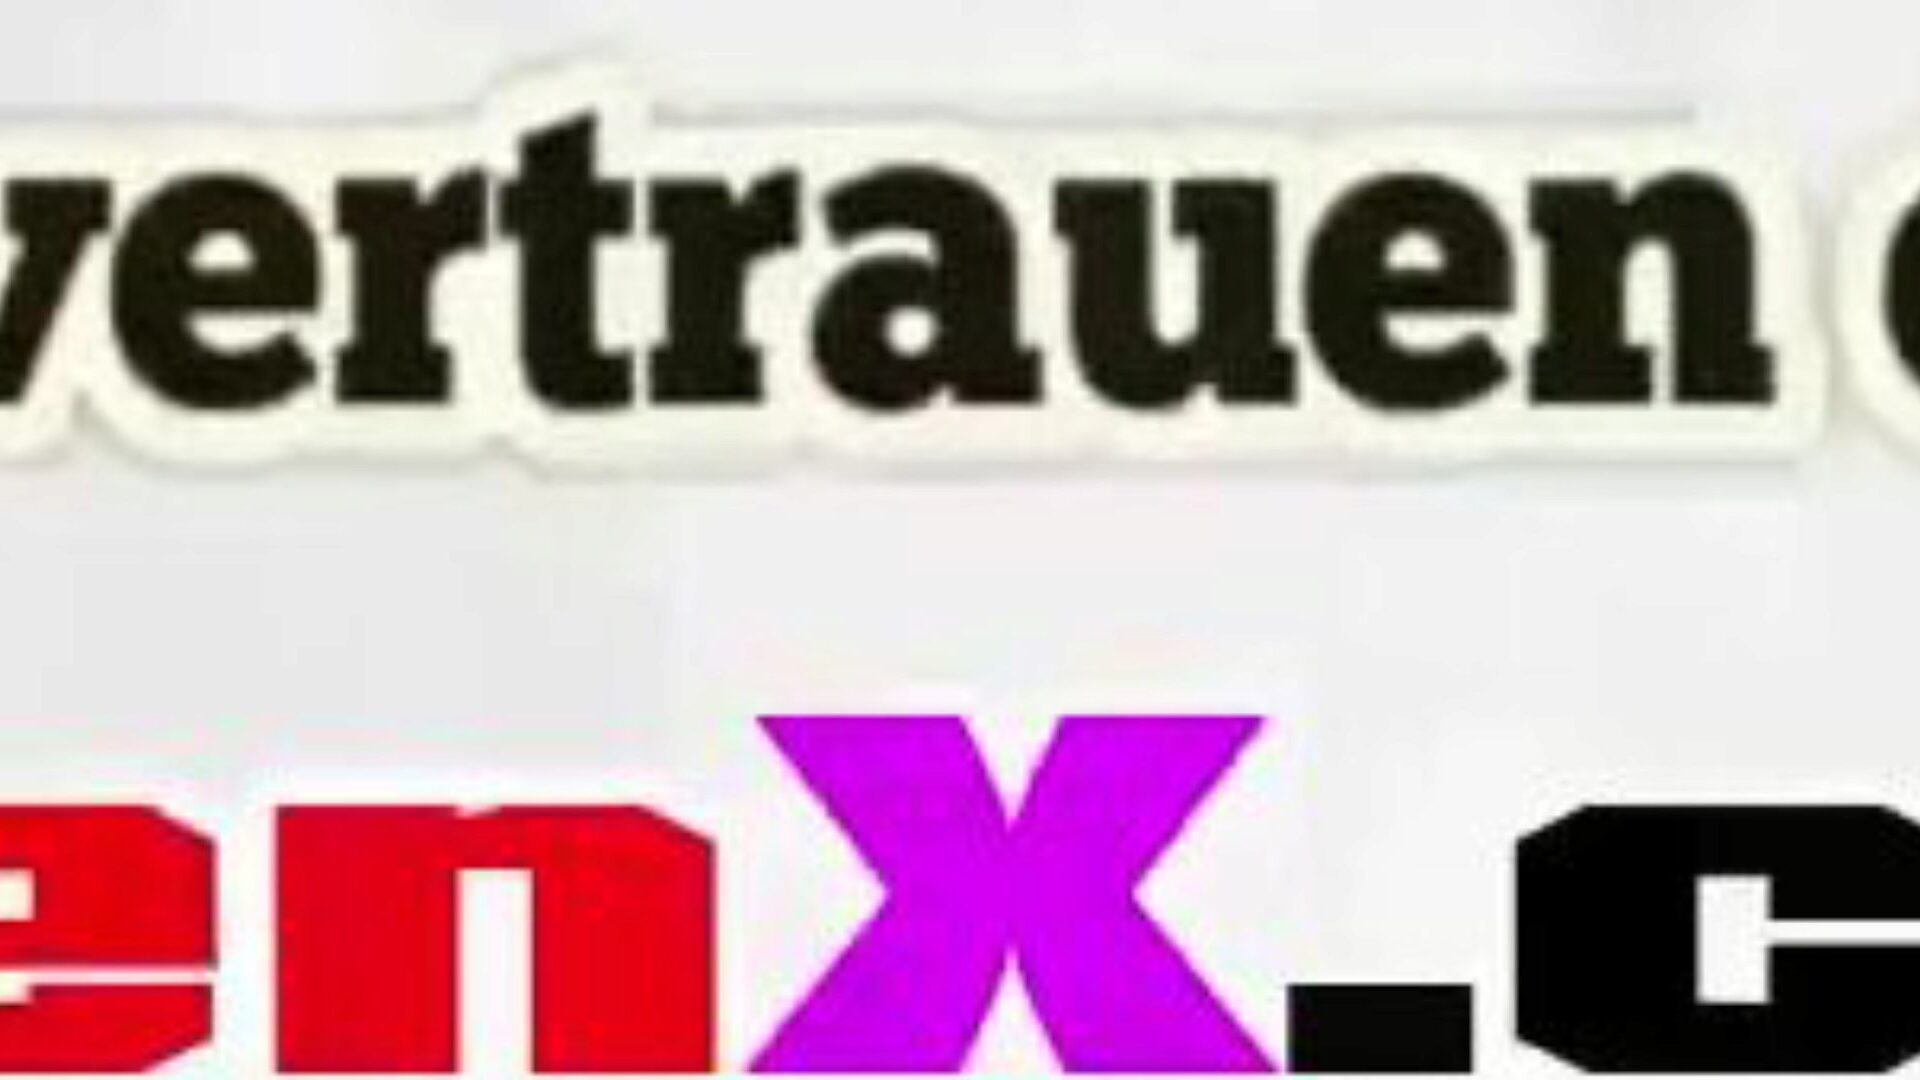 stiefmutter gefickt: darmowe niemieckie filmy porno HD f5 oglądaj stiefmutter gefickt tube film o ruchaniu za darmo na xhamster, ze zdumiewającą kolekcją niemieckich odcinków filmów pornograficznych z niemieckimi mutterami i mamutami